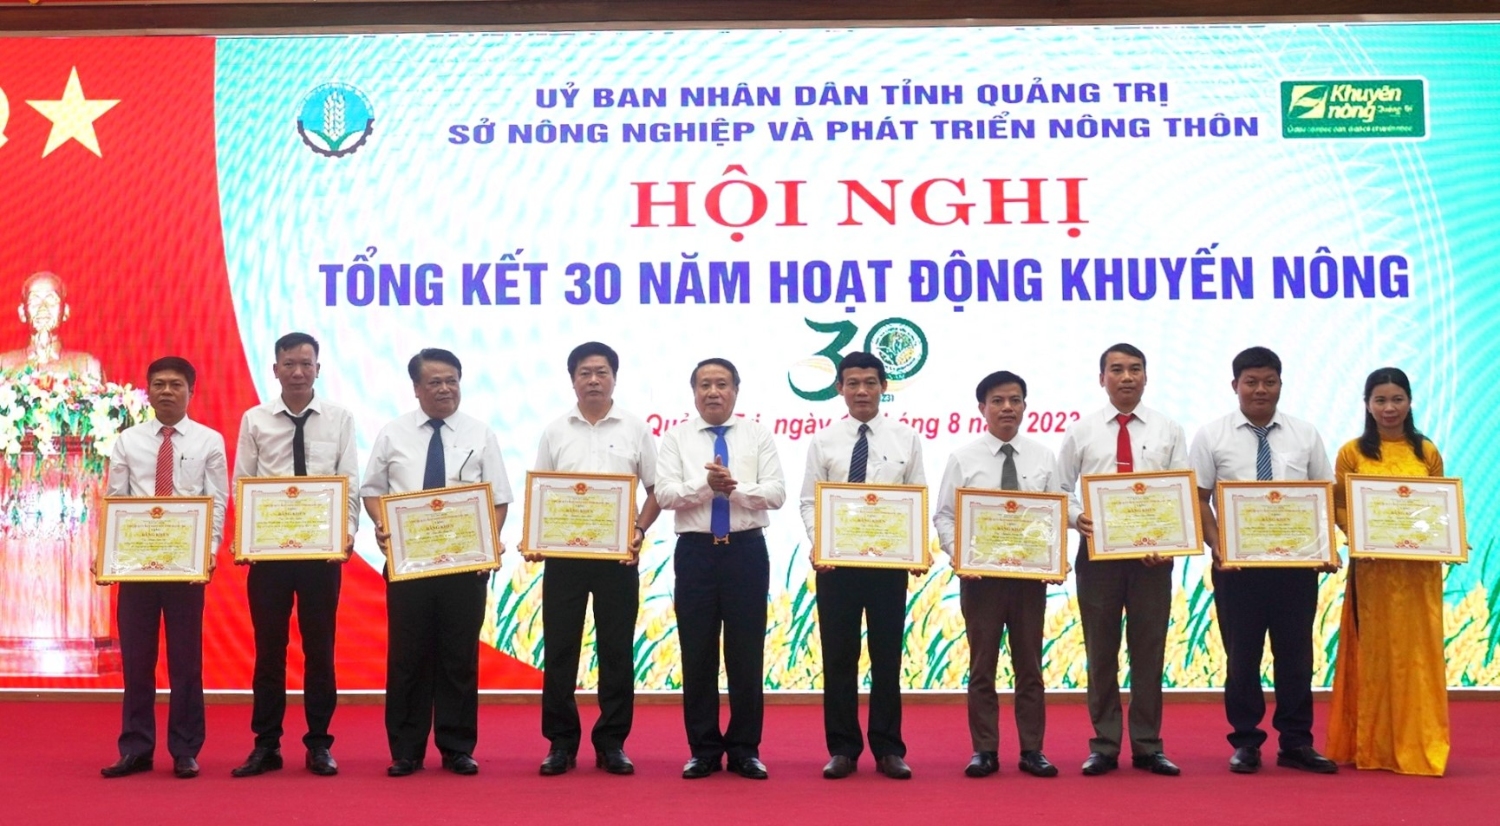 Phó Chủ tịch Thường trực UBND tỉnh Hà Sỹ Đồng trao bằng khen của UBND tỉnh cho các cá nhân có thành tích trong công tác khuyến nông